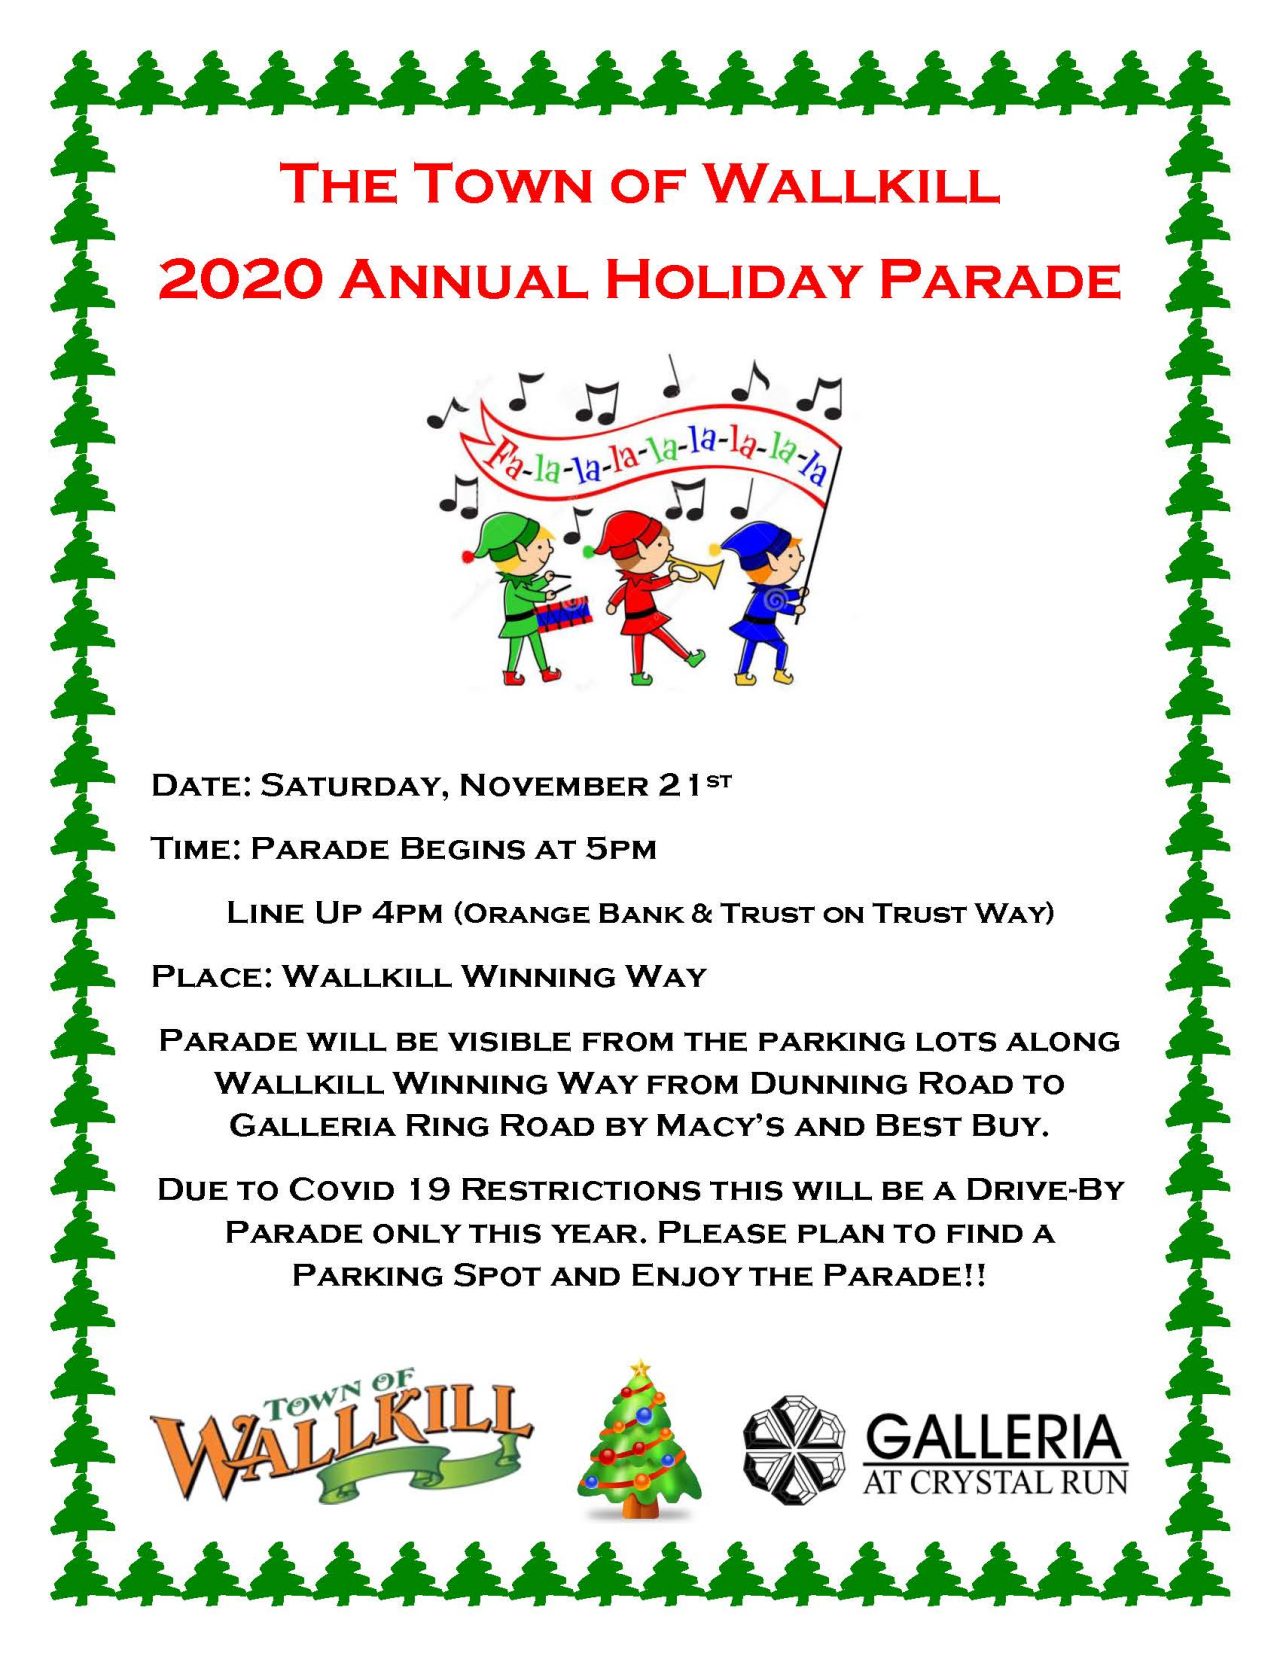 Town of Wallkill Holiday Parade - Galleria at Crystal Run